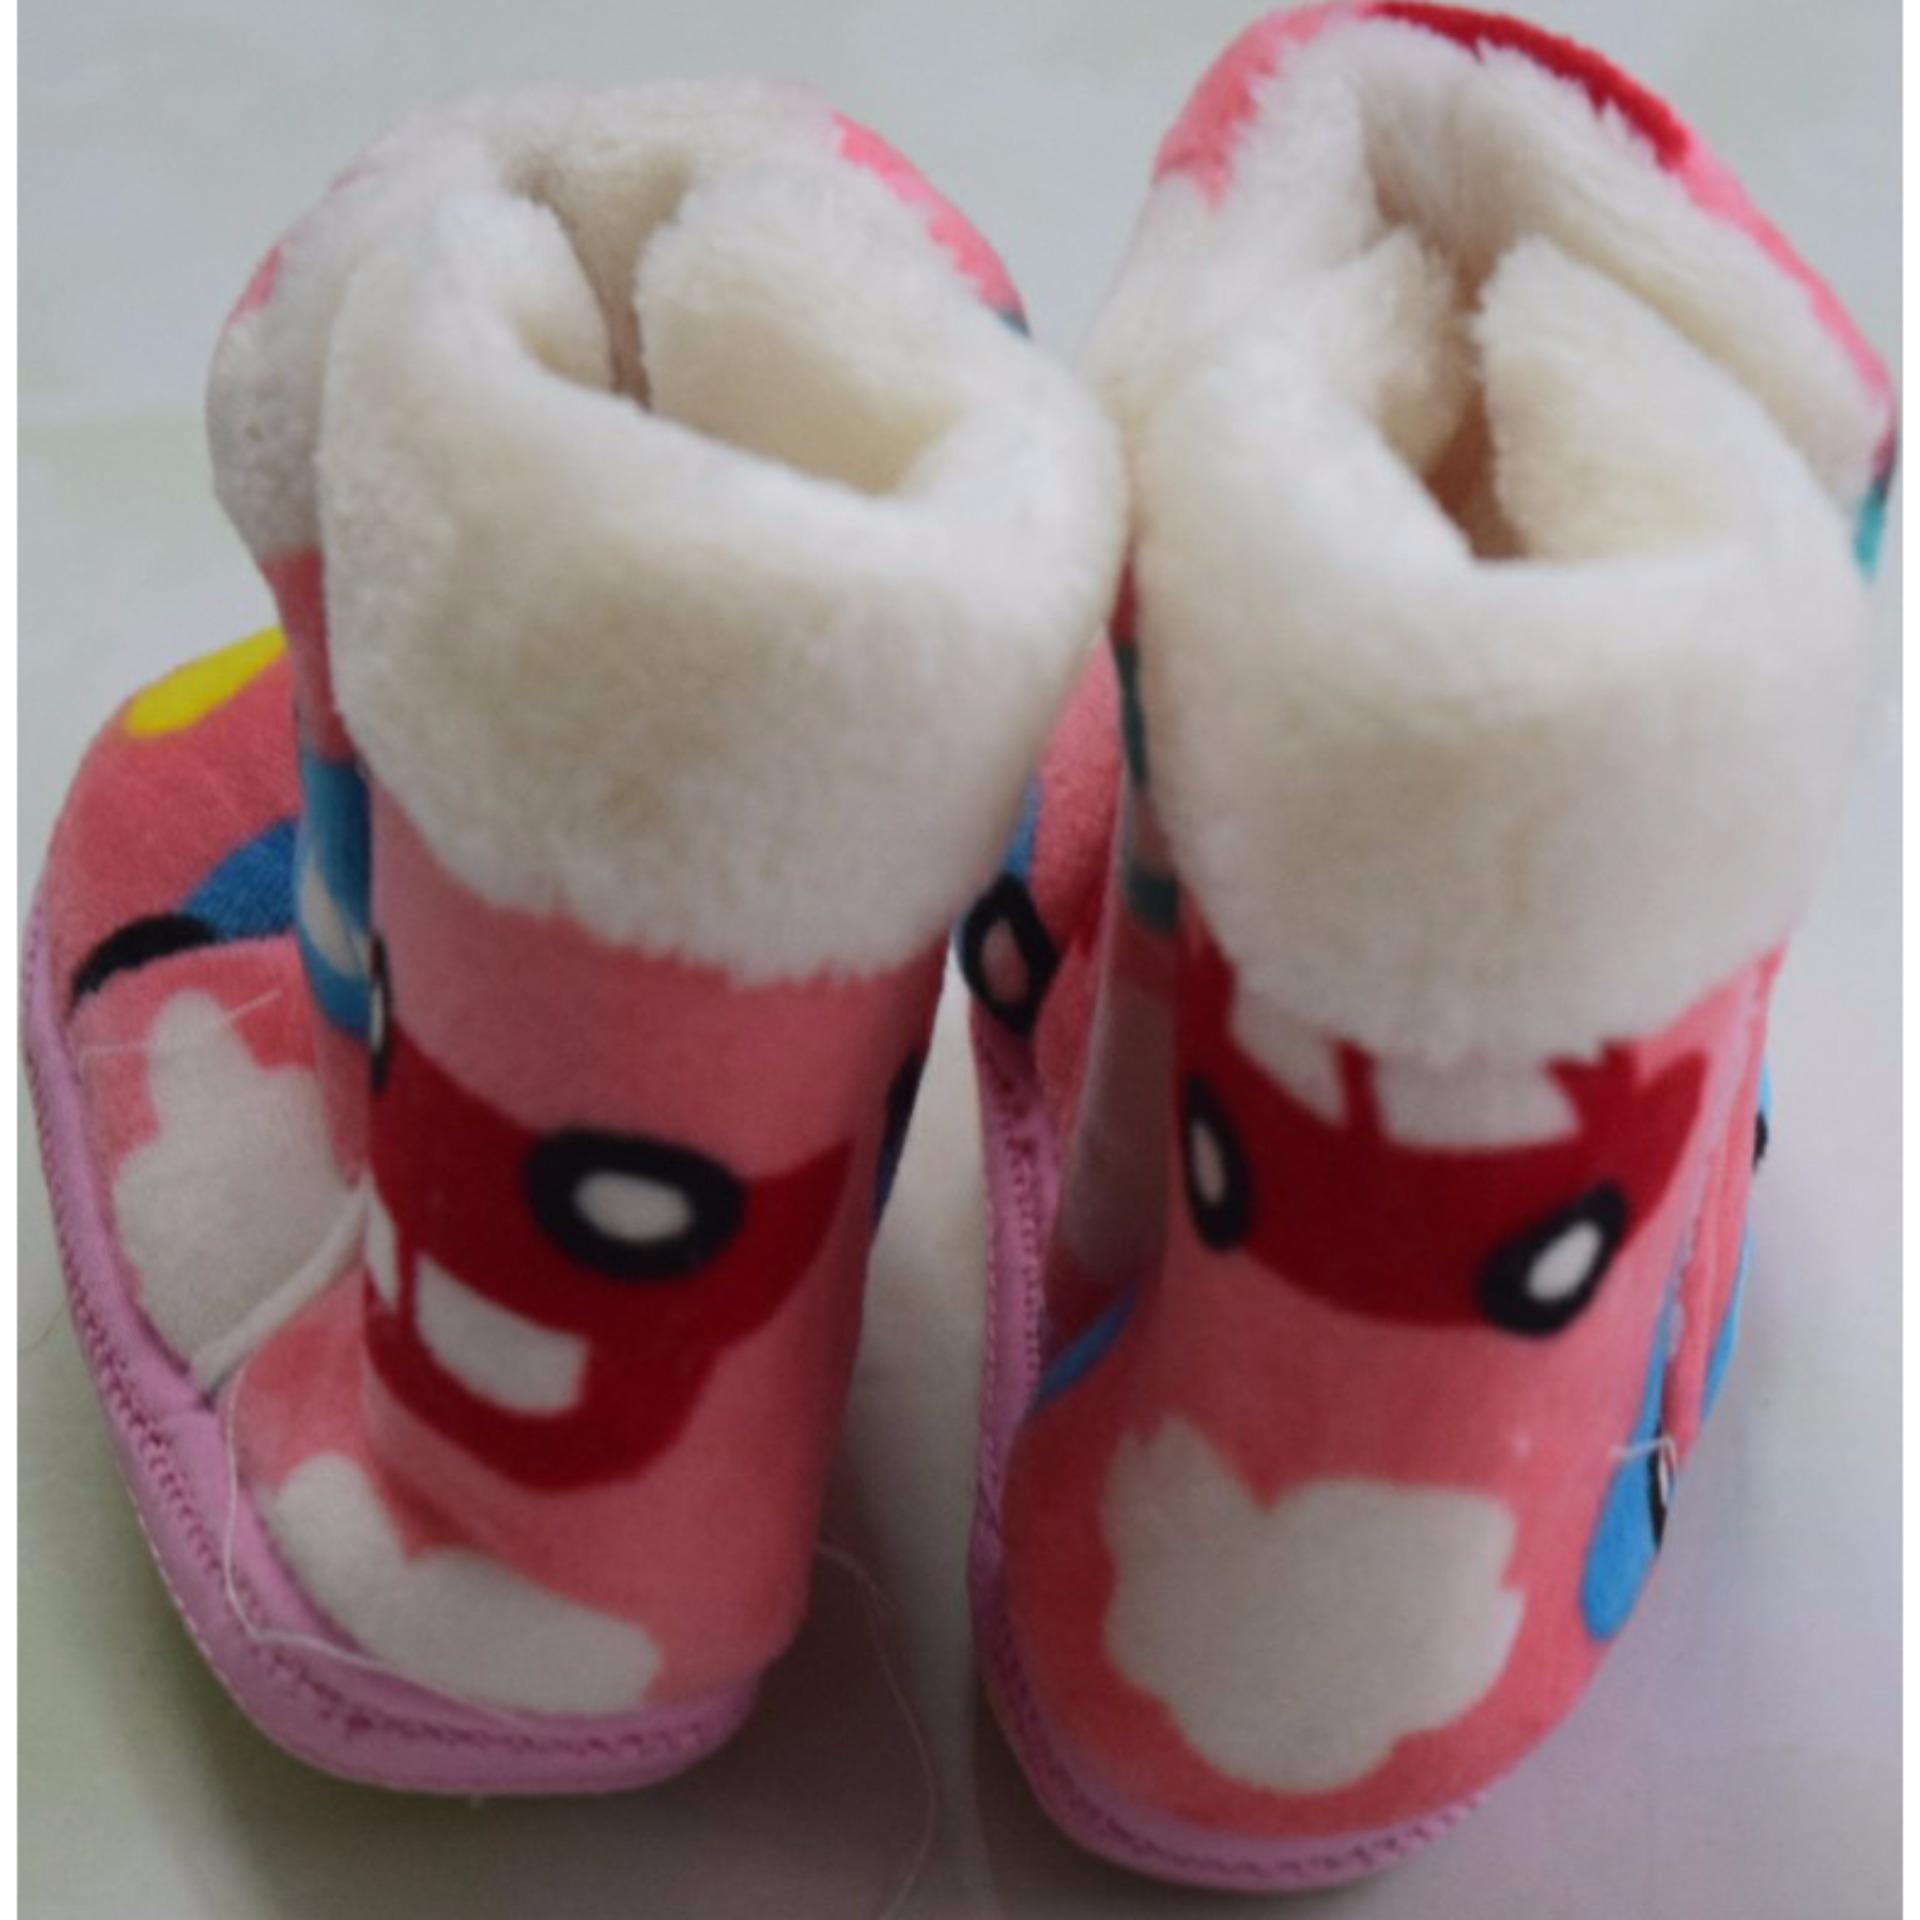 Giày bốt giữ ấm chân cho bé từ 6-12 tháng tuổi (Màu cam)